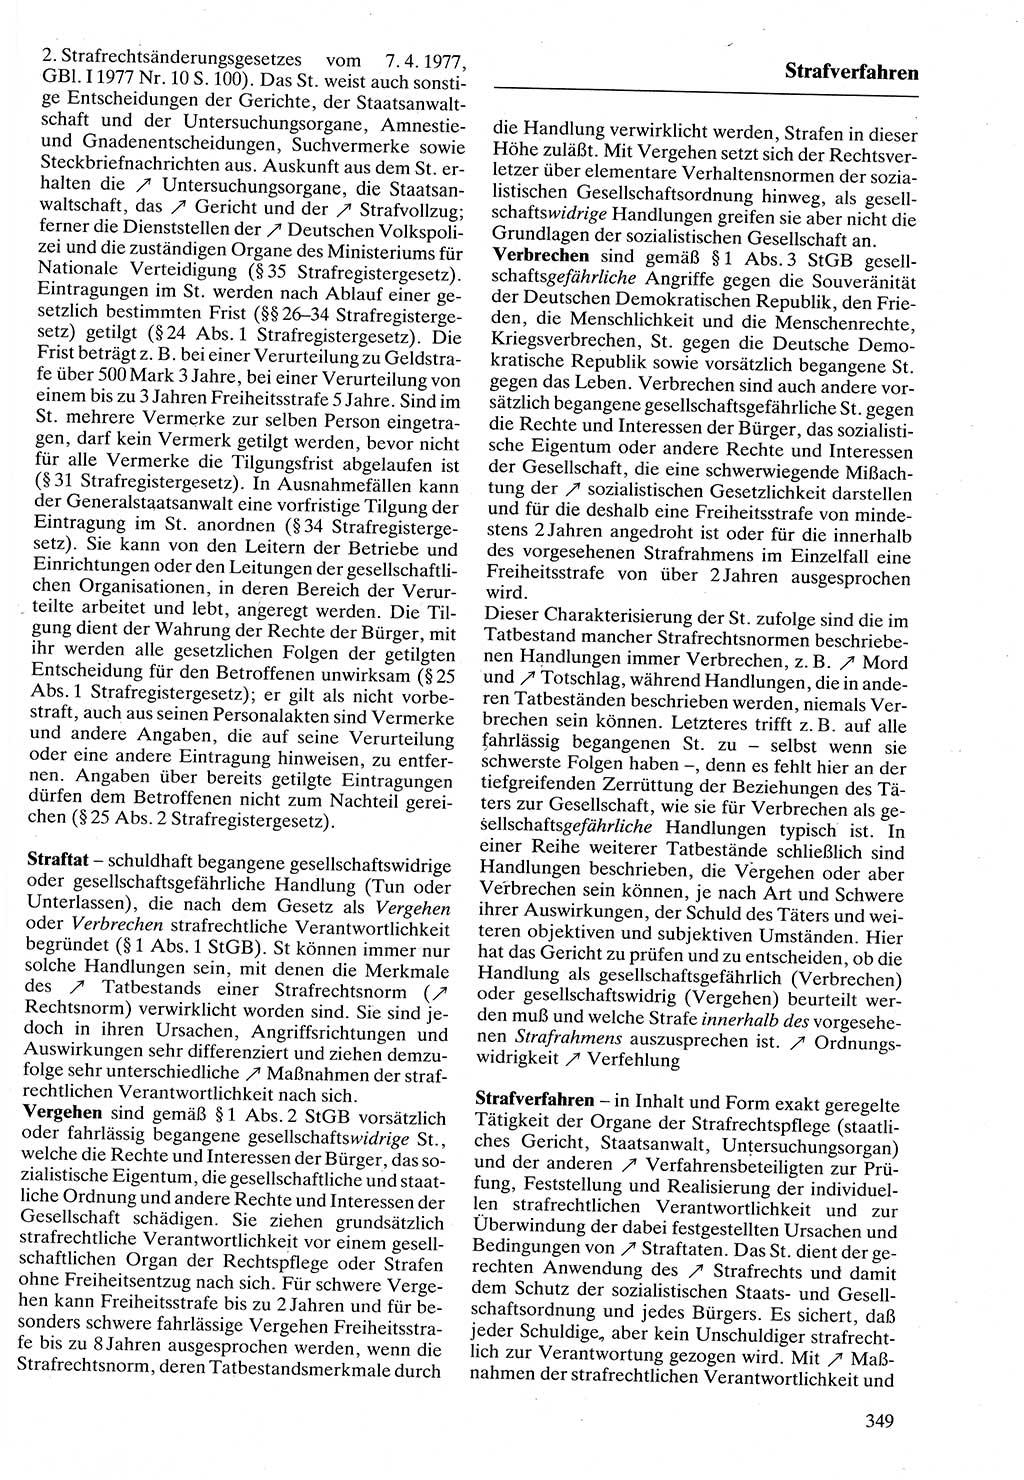 Rechtslexikon [Deutsche Demokratische Republik (DDR)] 1988, Seite 349 (Rechtslex. DDR 1988, S. 349)